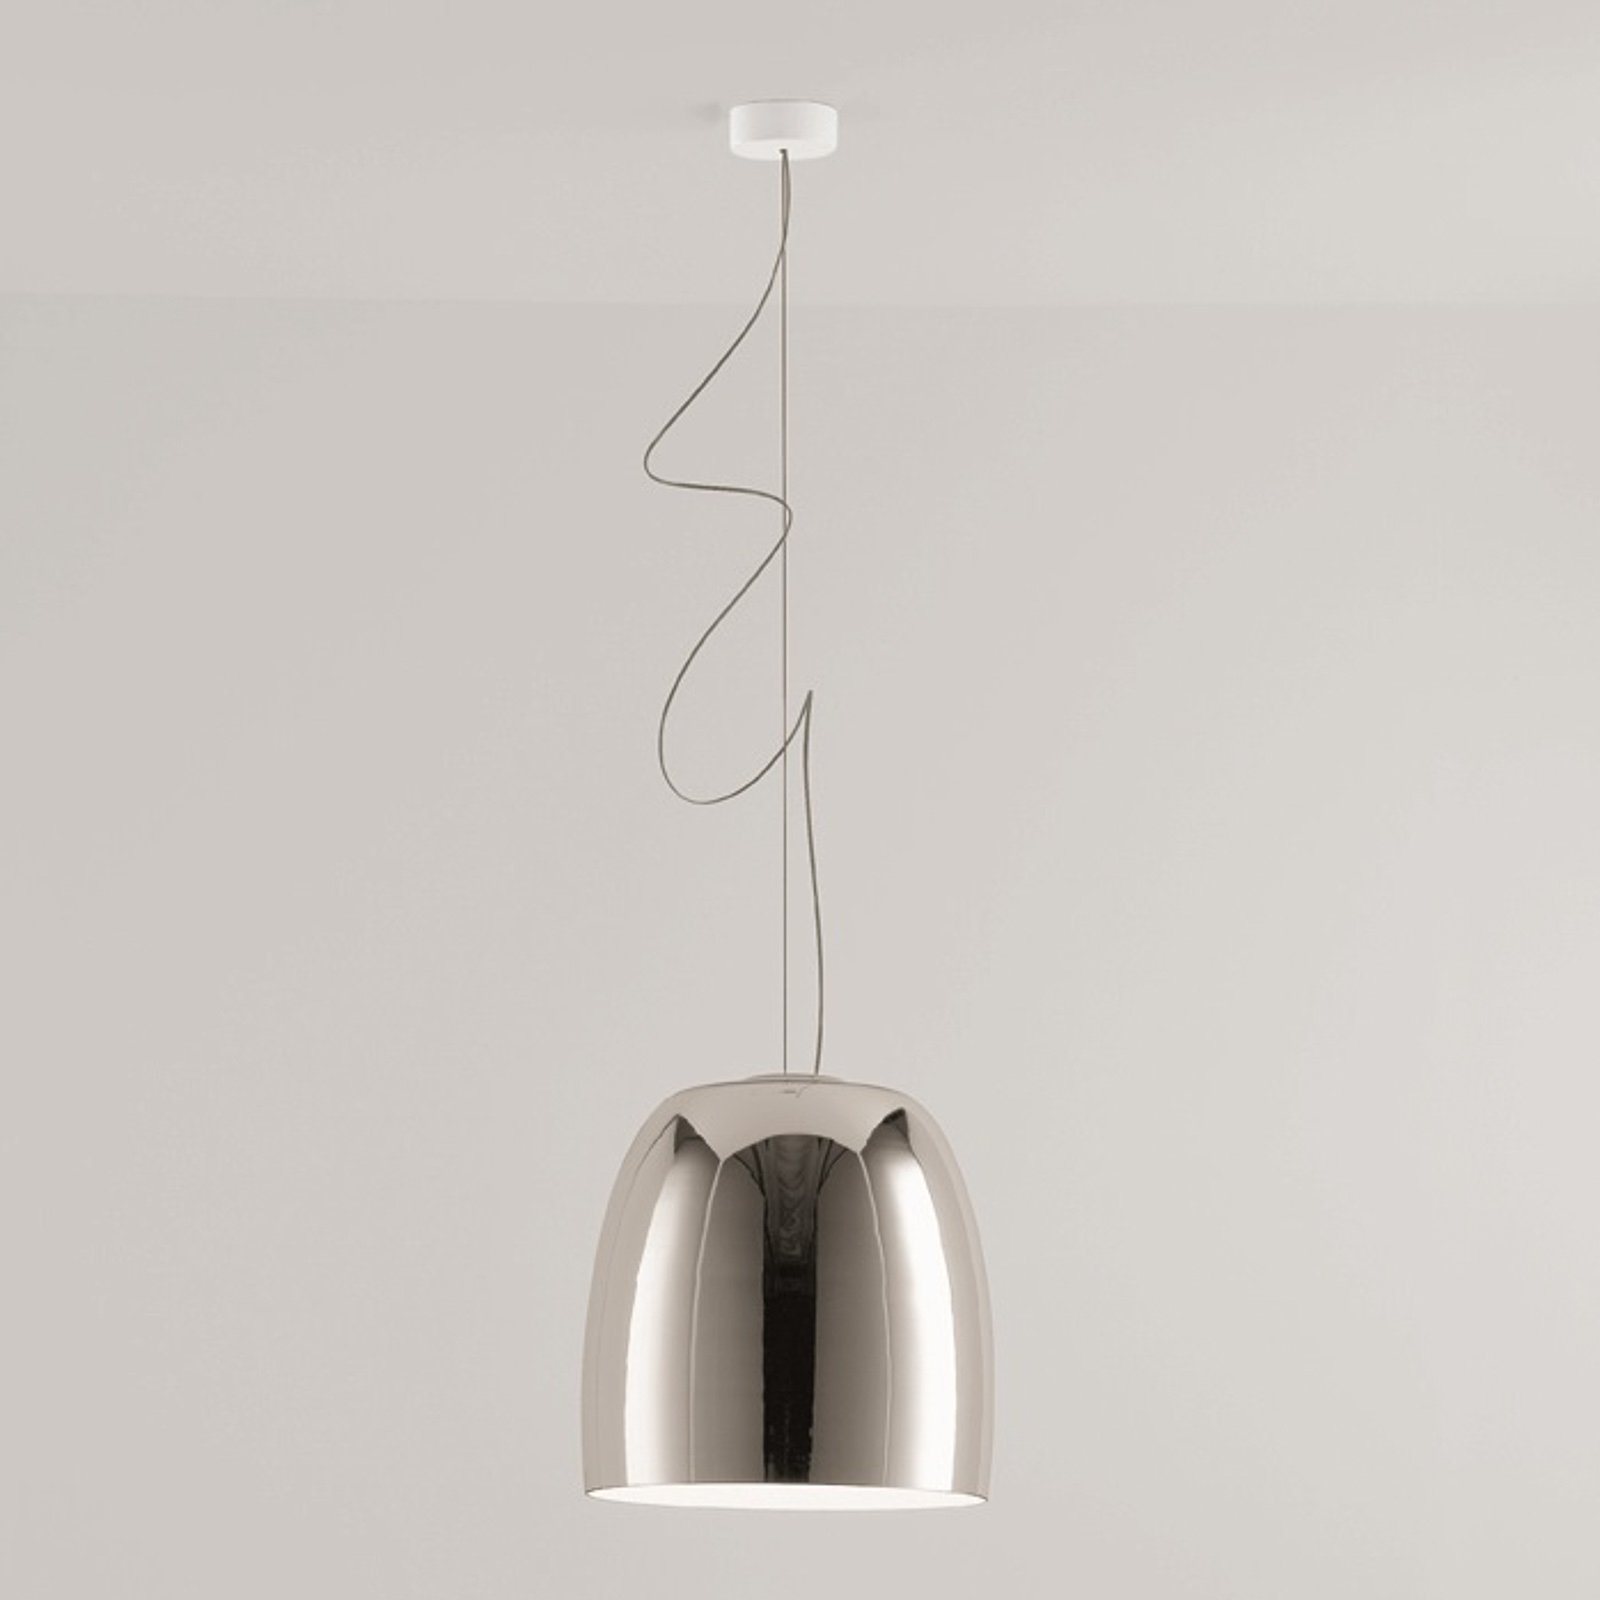 Prandina Notte S5 hanging light, chrome/white